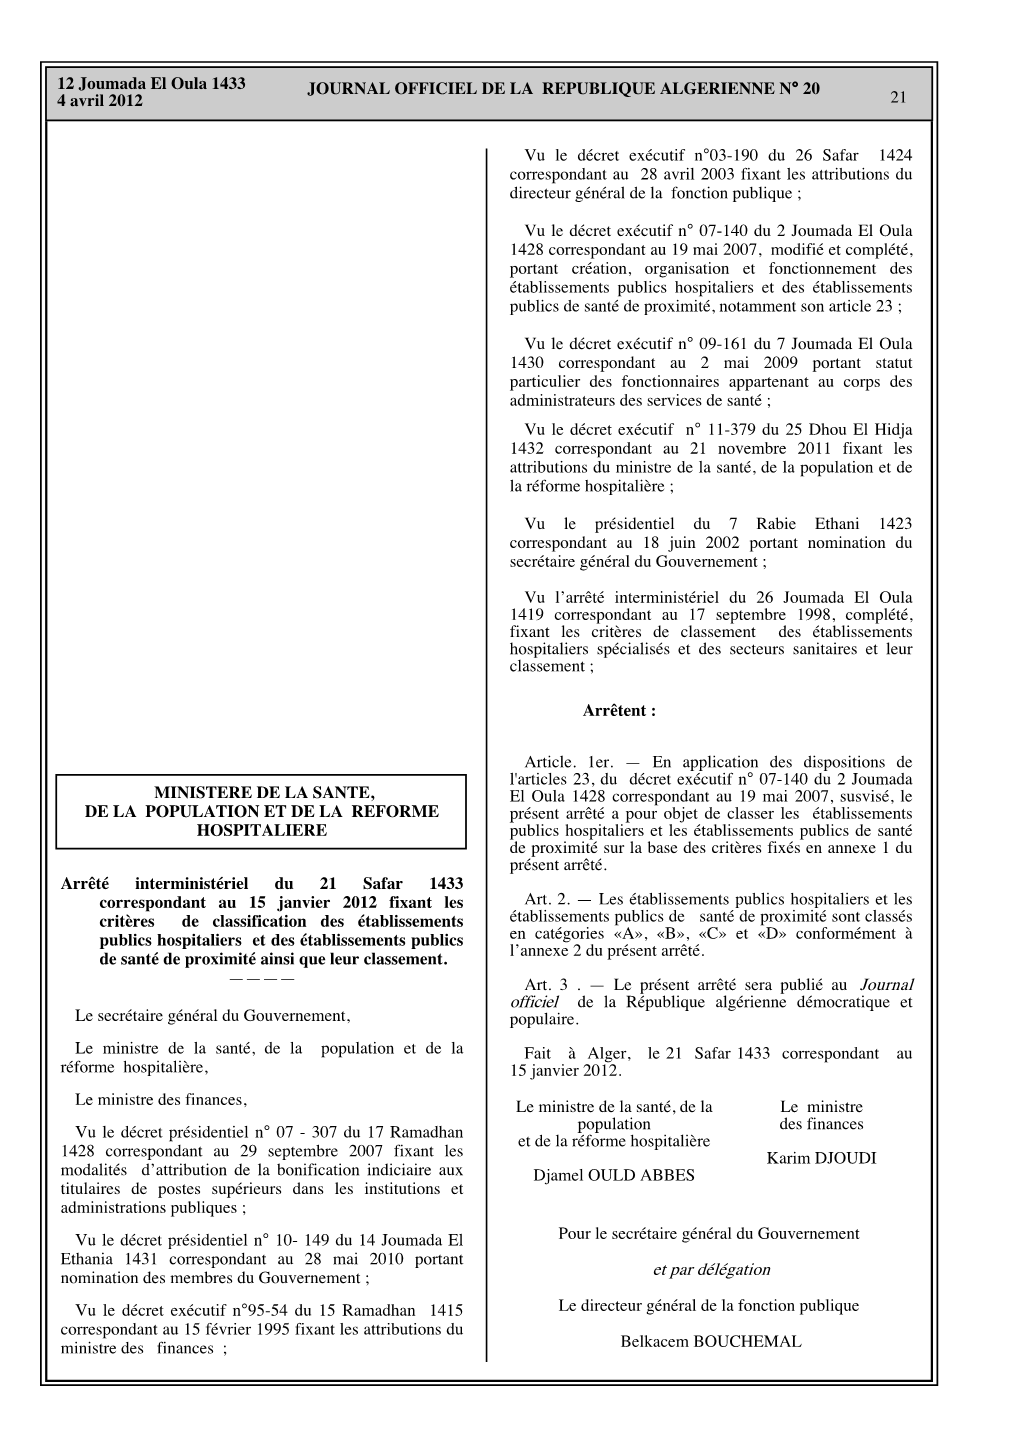 Arrêté Interministériel 15-01-2012